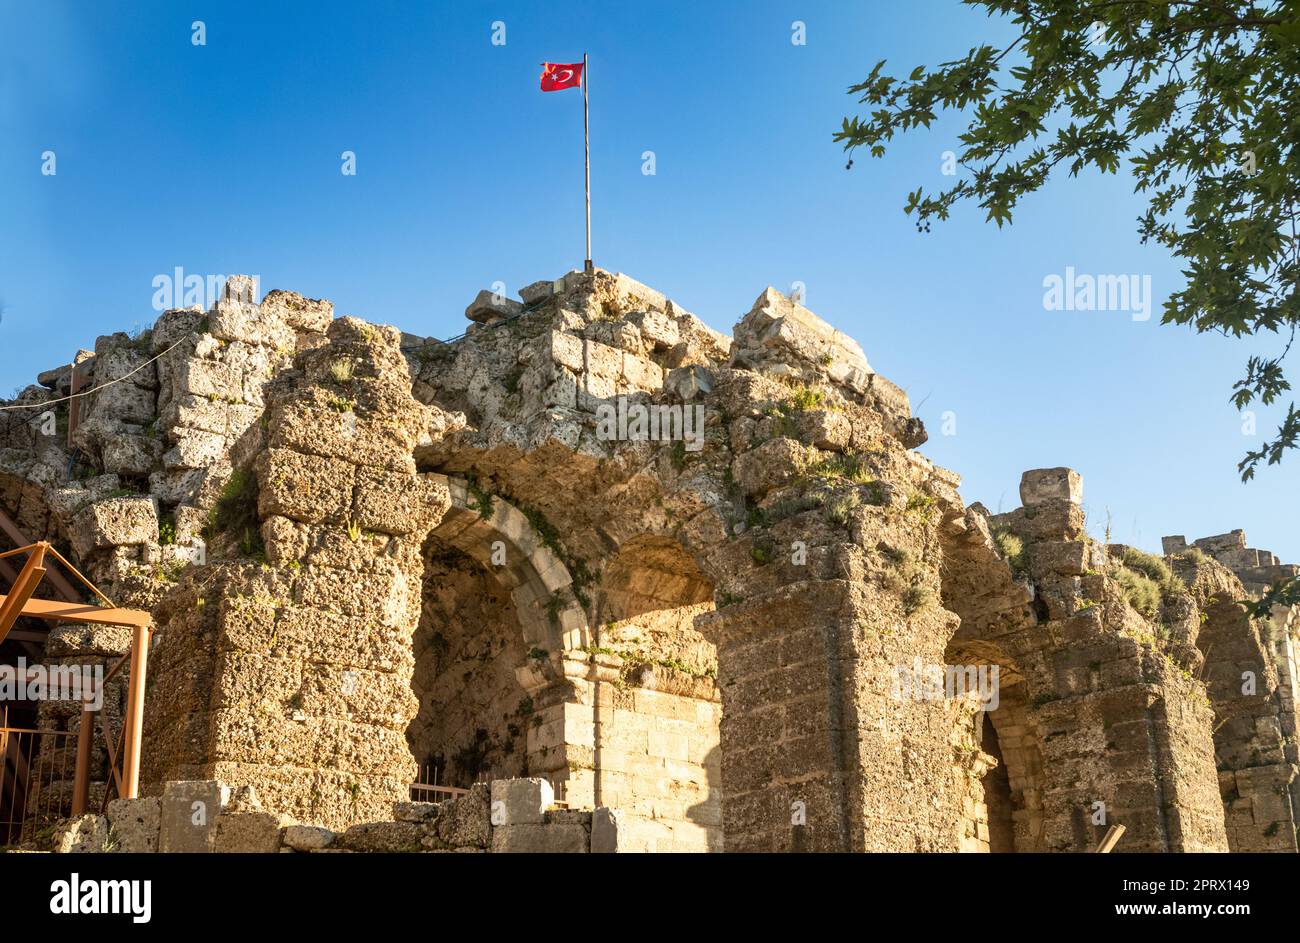 La bandiera turca rossa vola in cima alle principali rovine dell'anfiteatro vicino al Tempio di Dioniso a lato dell'antica città romana in Turchia (Turkiye). Th Foto Stock